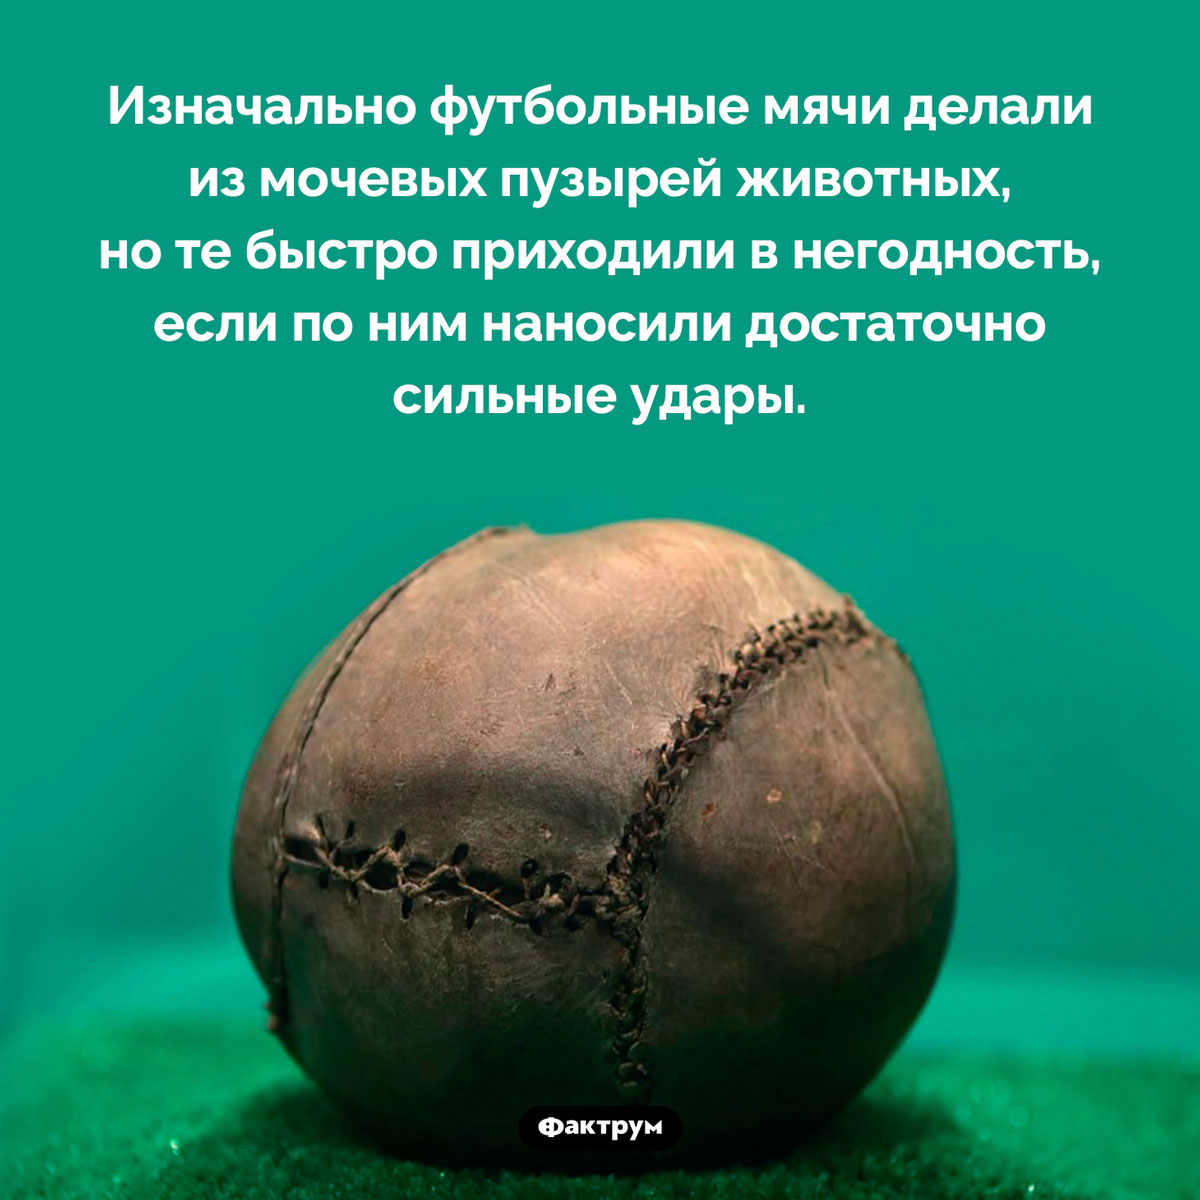 Из чего делали первые футбольные мячи. Изначально футбольные мячи делали из мочевых пузырей животных, но те быстро приходили в негодность, если по ним наносили достаточно сильные удары.